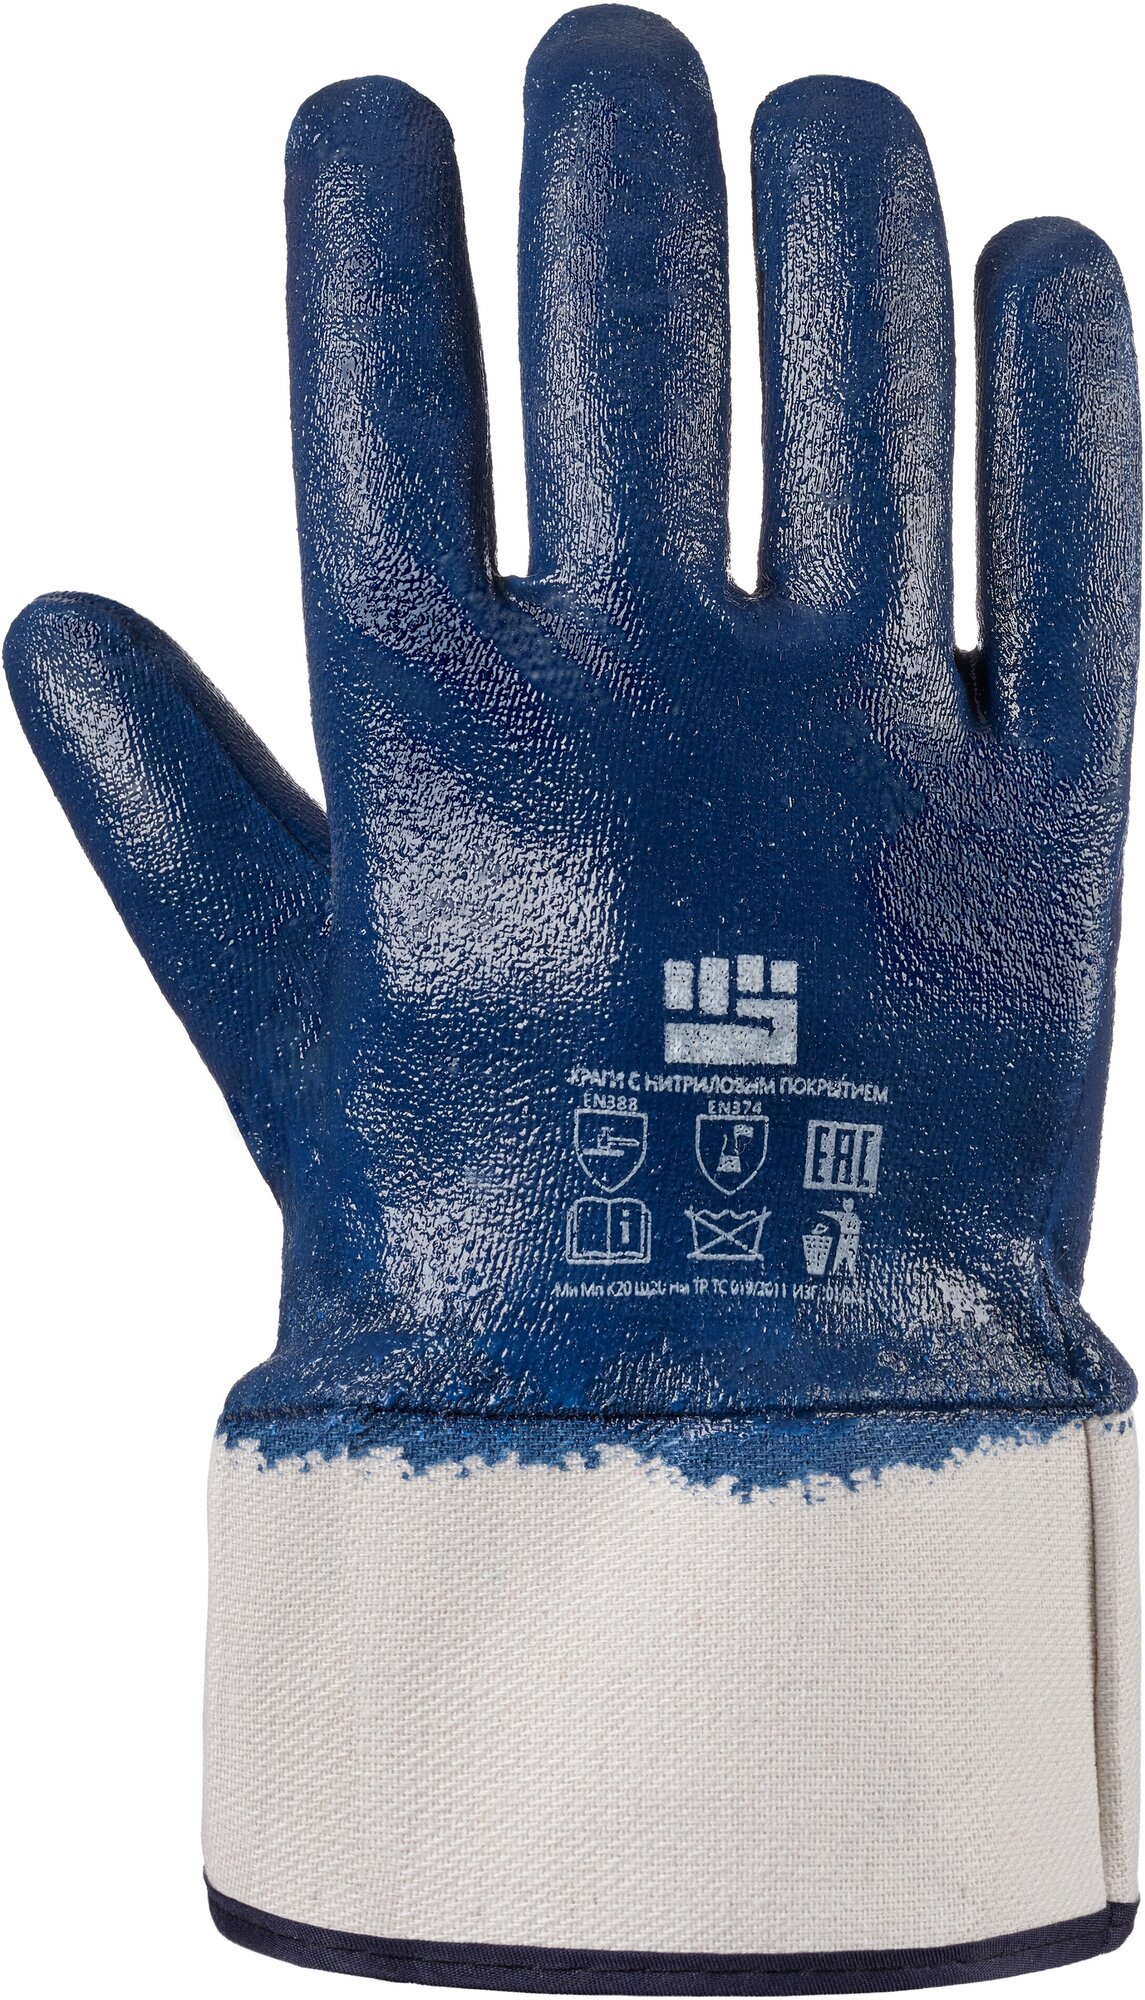 Перчатки маслобензостойкие, нитриловые, перчатки мужские, перчатки хозяйственные, перчатки рабочие, перчатки строительные, рабочие перчатки, перчатки рабочие защитные, перчатки для работы, краги МБС, синие 1 пара